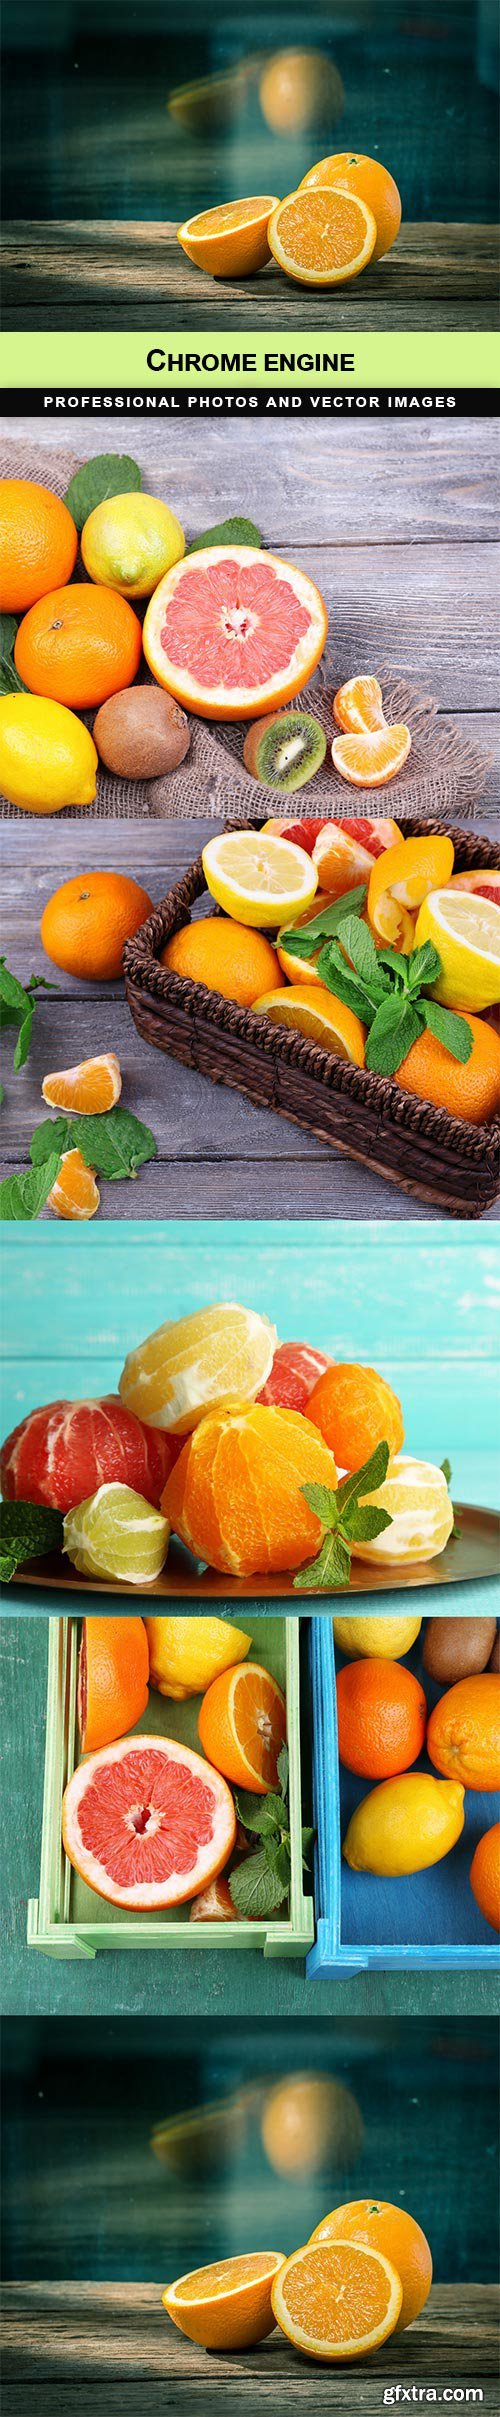 Citrus fruits - 5 UHQ JPEG